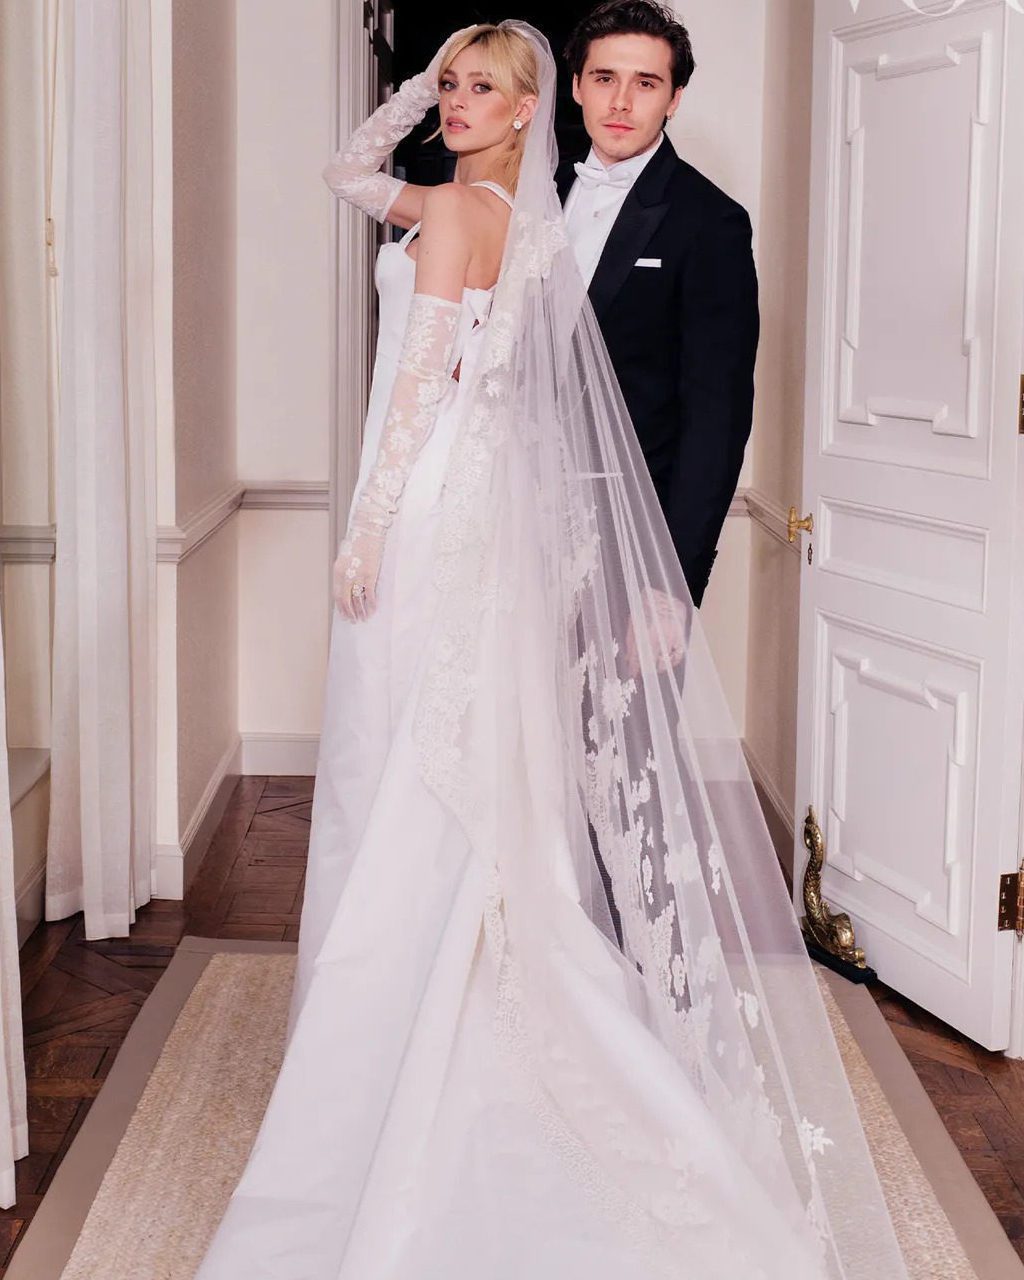 「世纪婚礼」婚纱照美如童话贝克汉家喜迎亿万媳妇